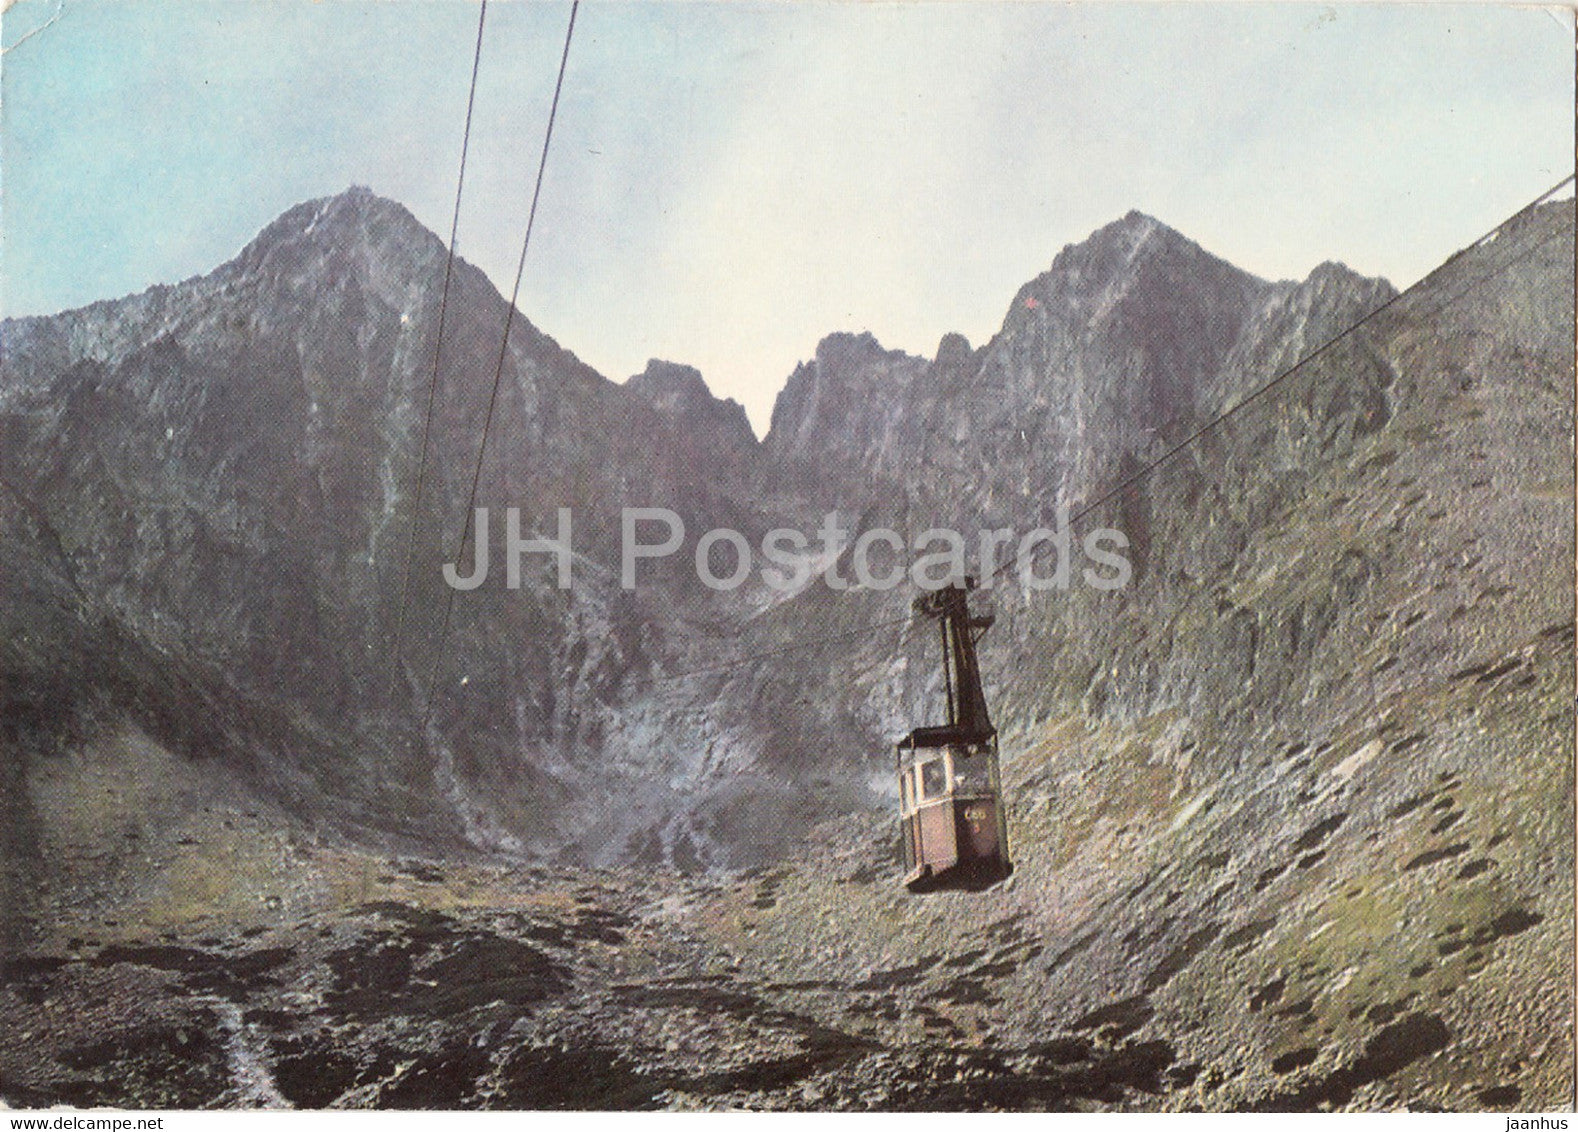 Vysoke Tatry - High Tatras - Skalnate Valley - Lomnicky Kezmarsky Stit - cable car - Czechoslovakia - Slovakia - unused - JH Postcards